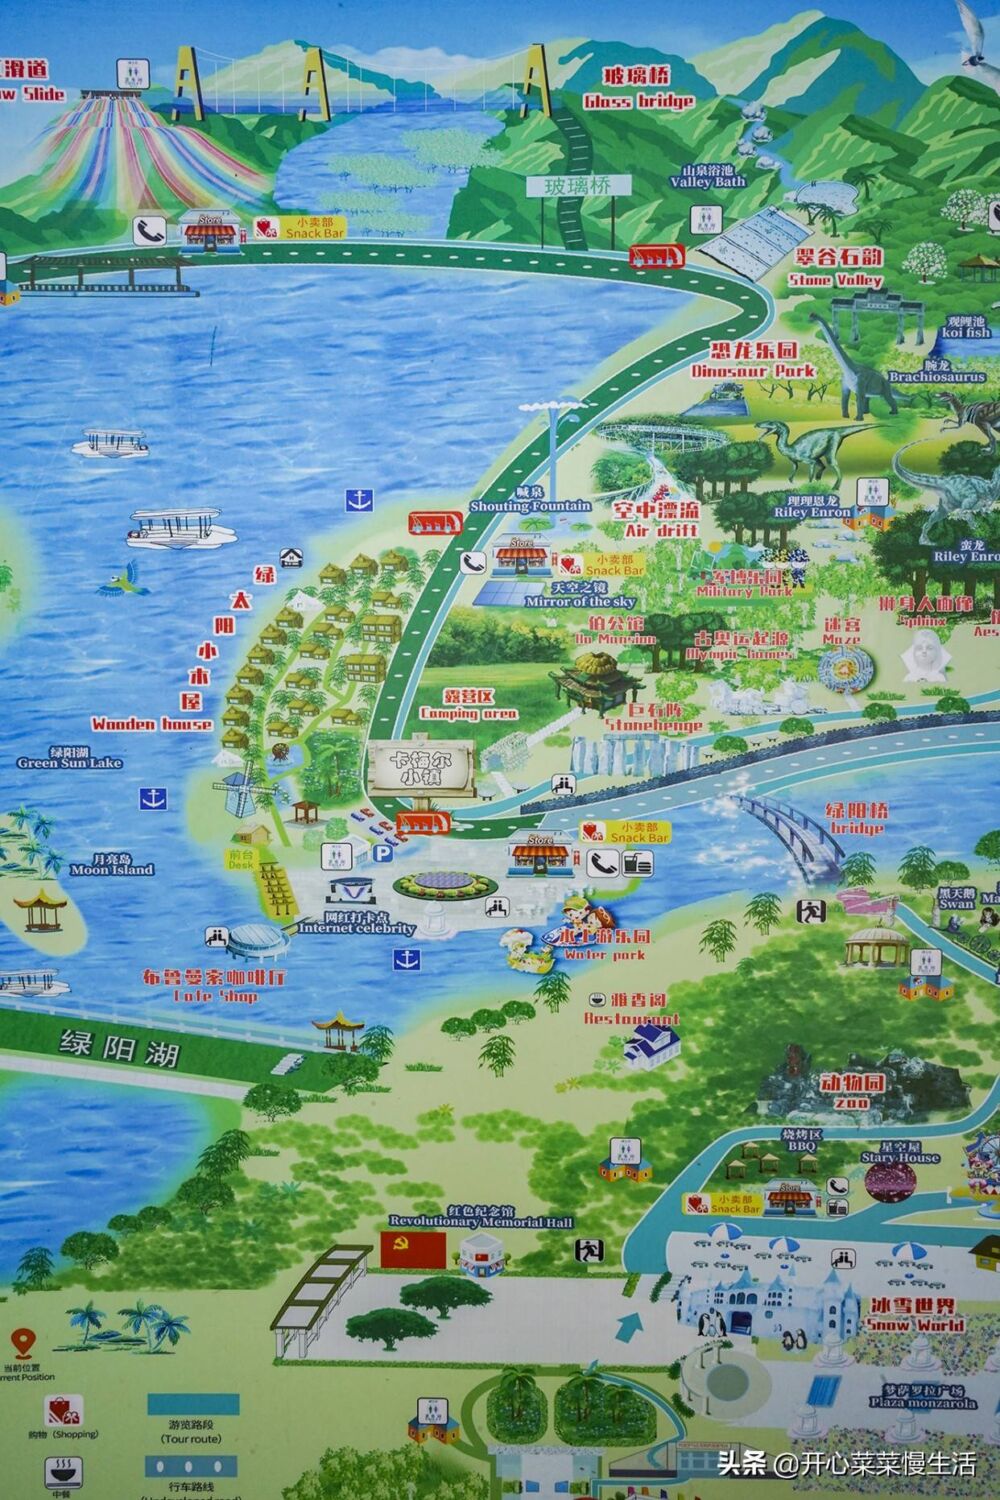 广东潮州有个网红景区，有小奈良和小火山岛之称，拍照遛娃两不误